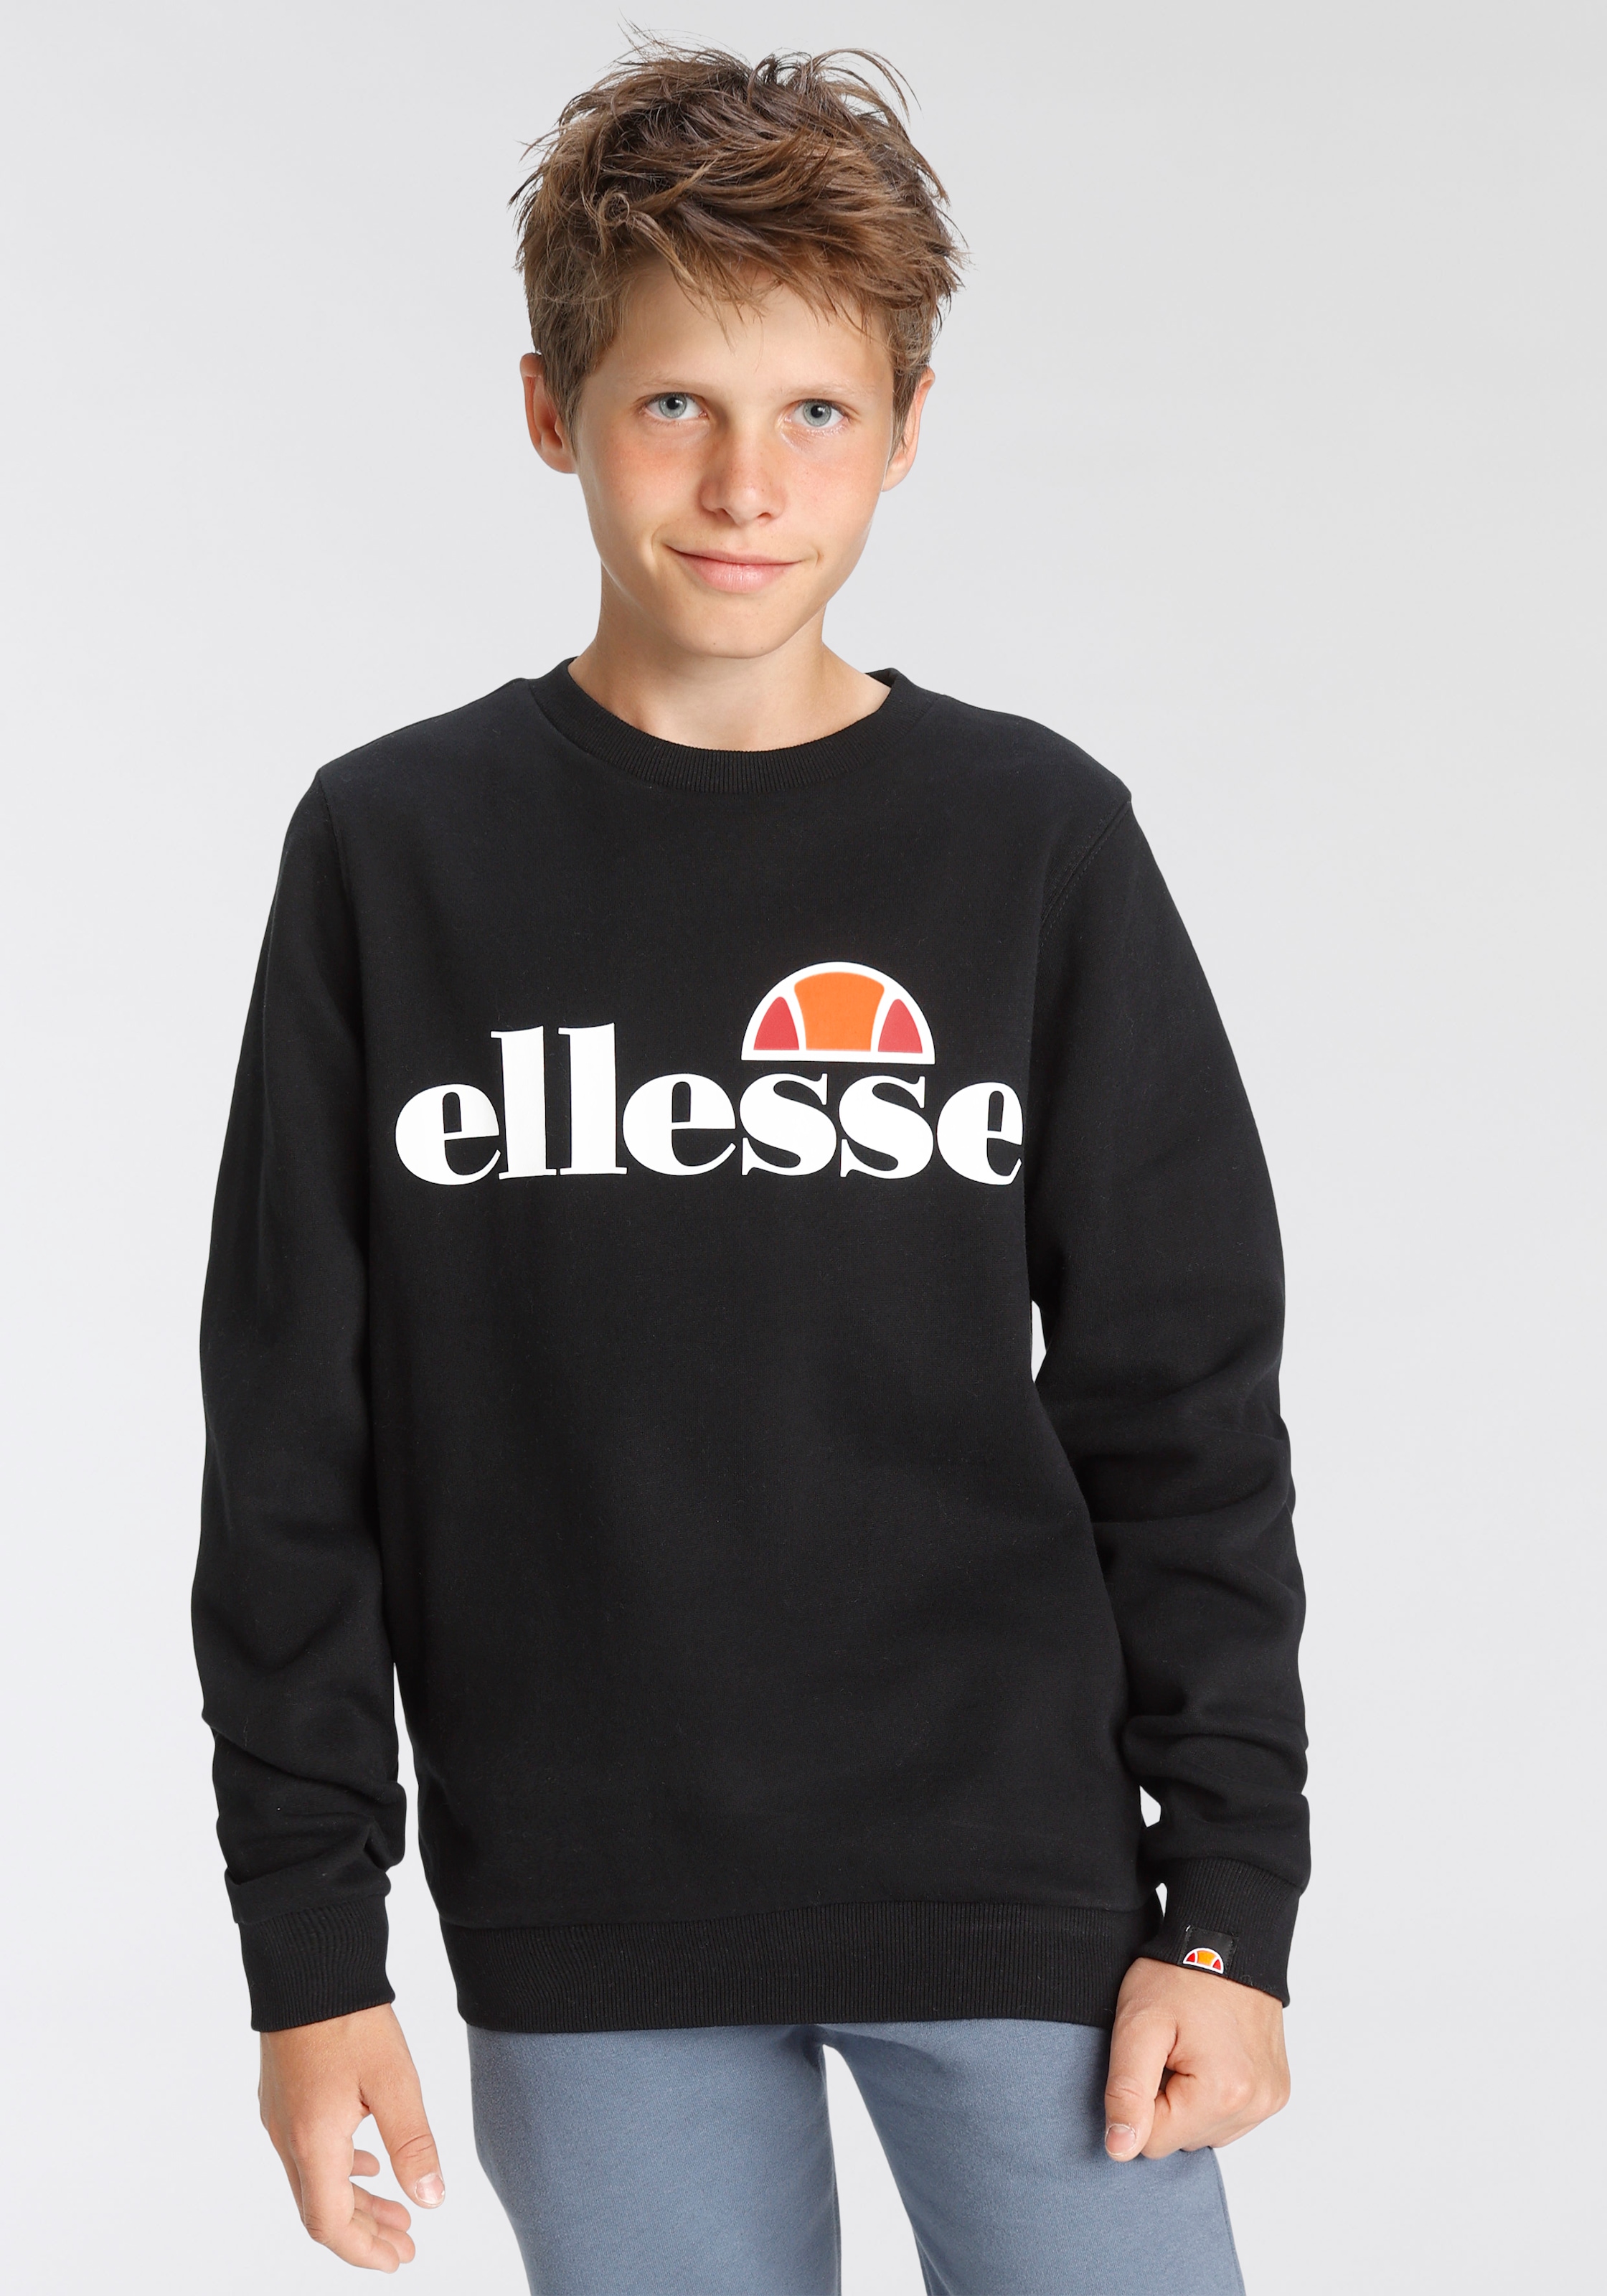 Ellesse Sweatshirt OTTO bestellen »für Kinder« bei